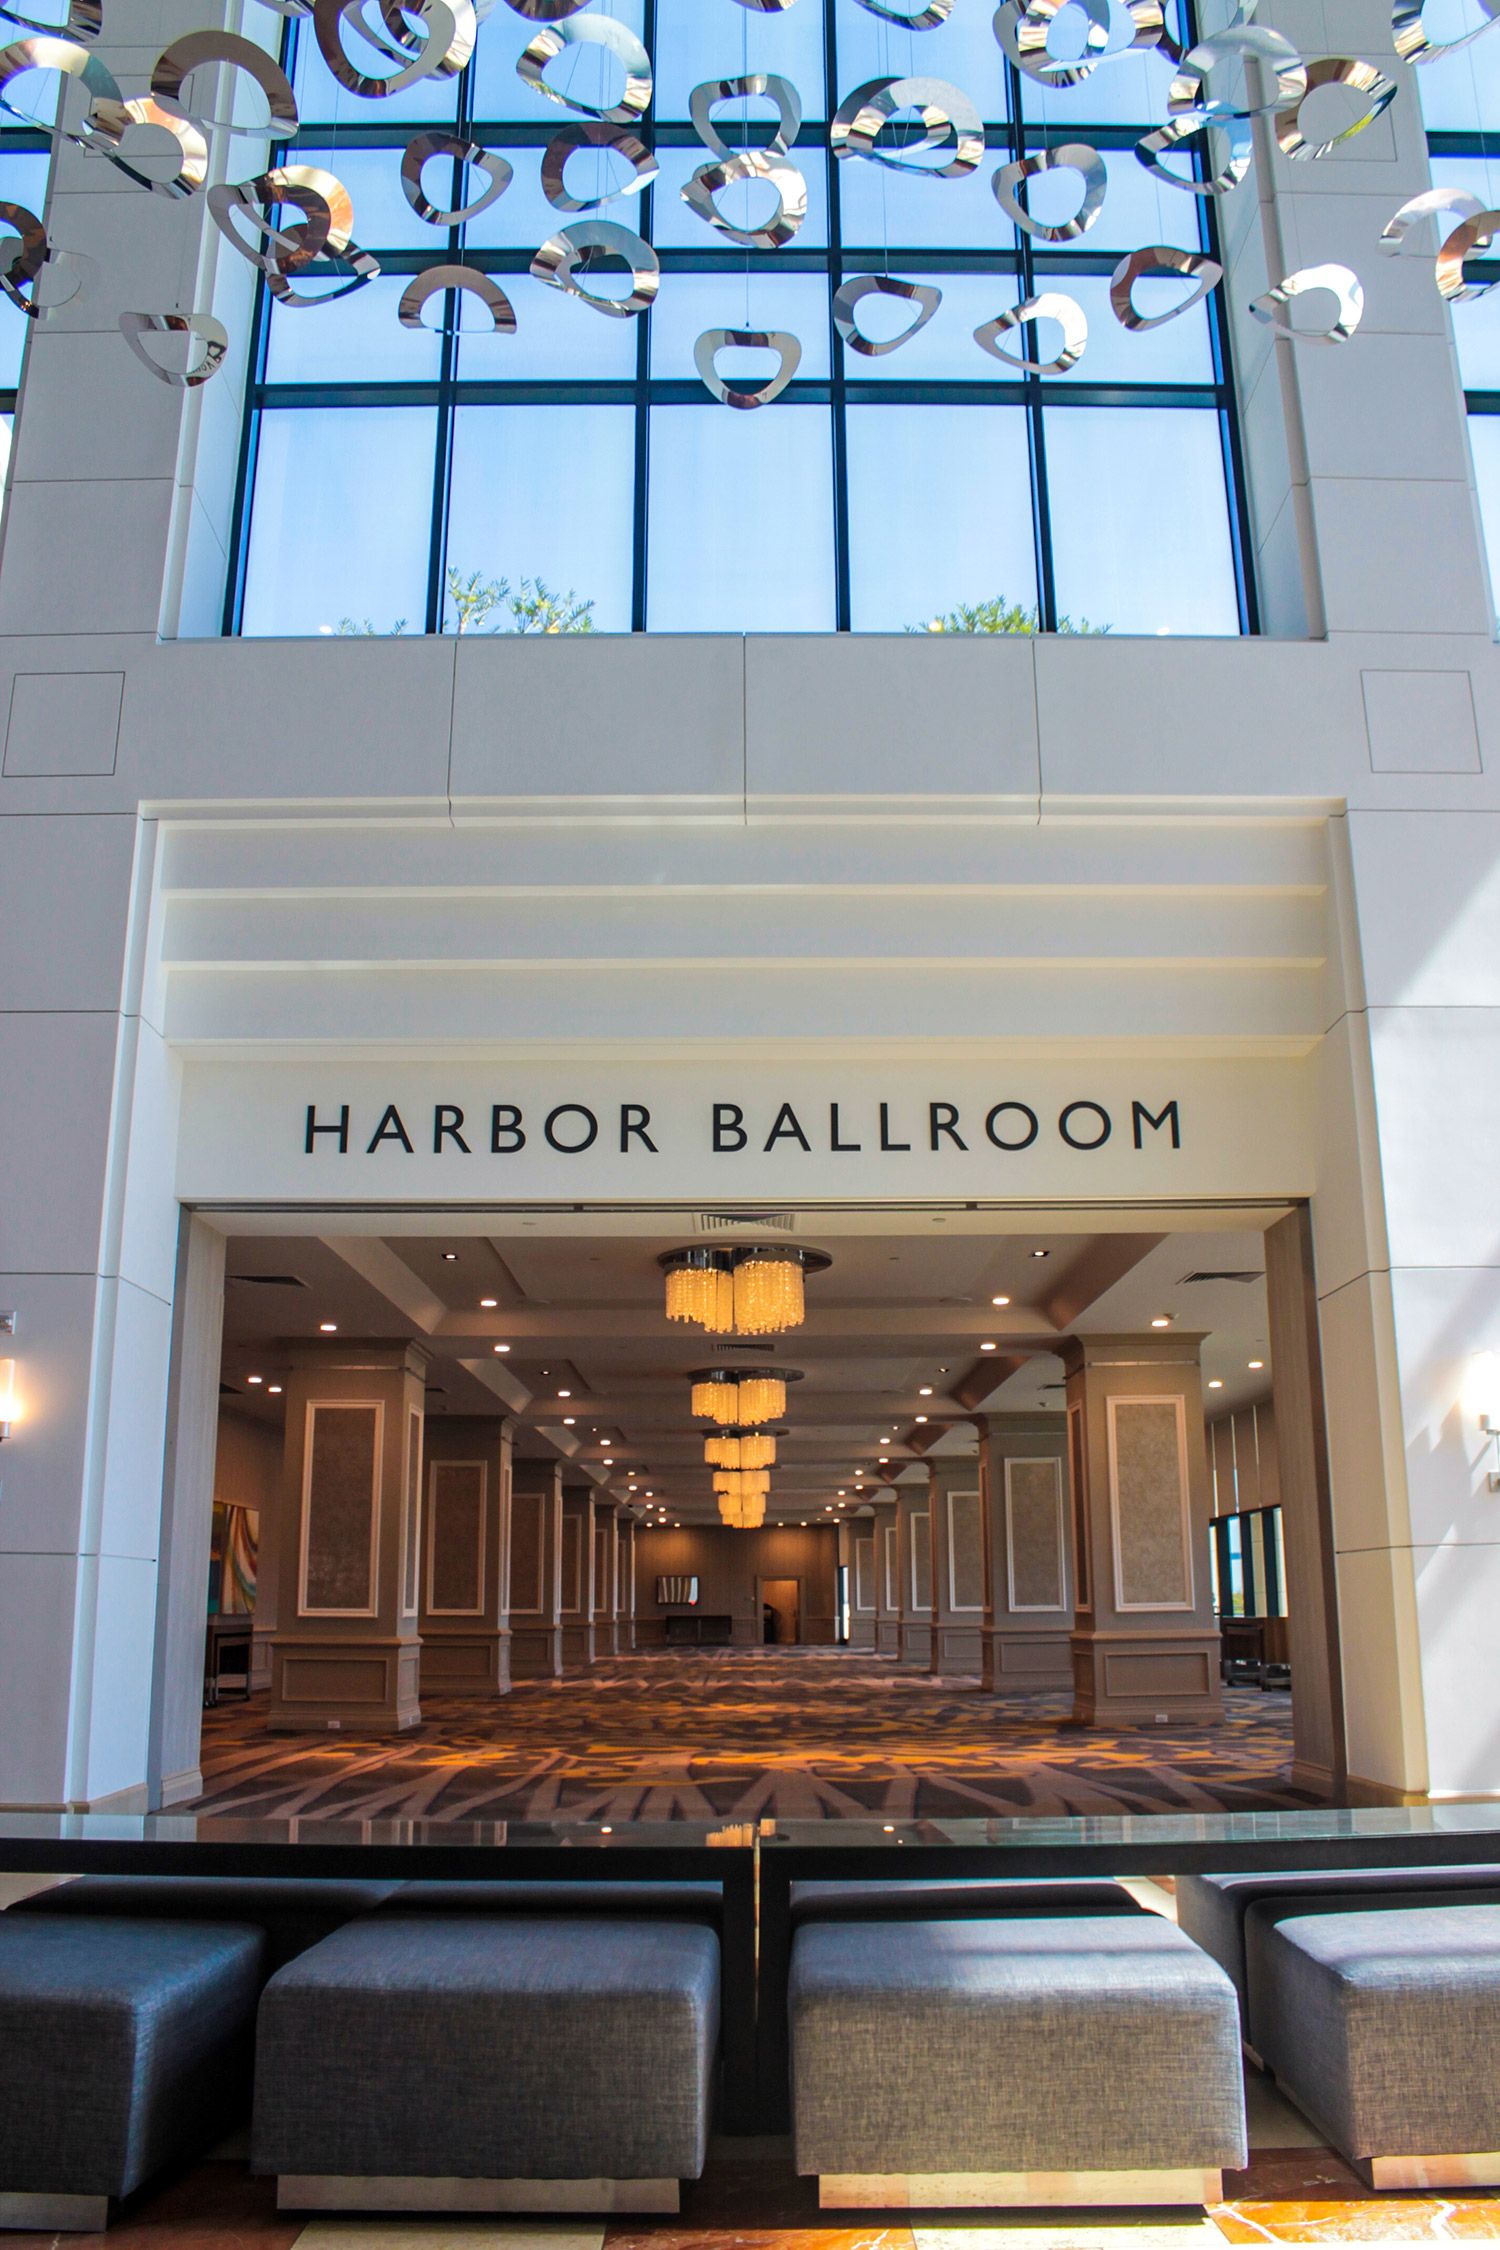 300-Hyatt-harbor-ballroom-3